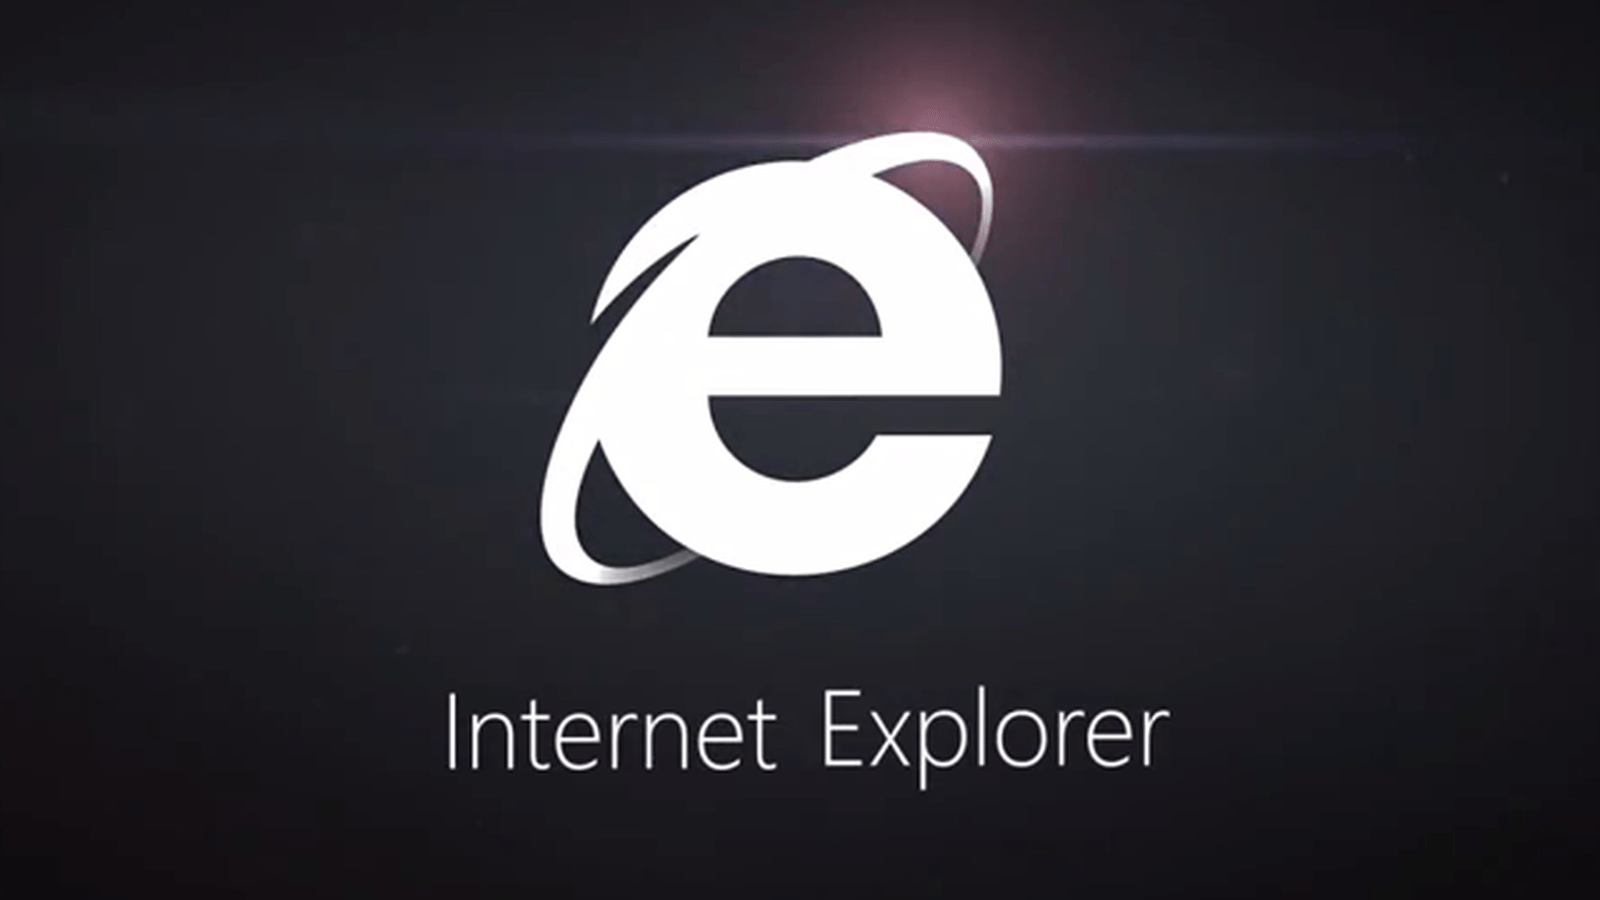 Fin de soporte Internet Explorer 11